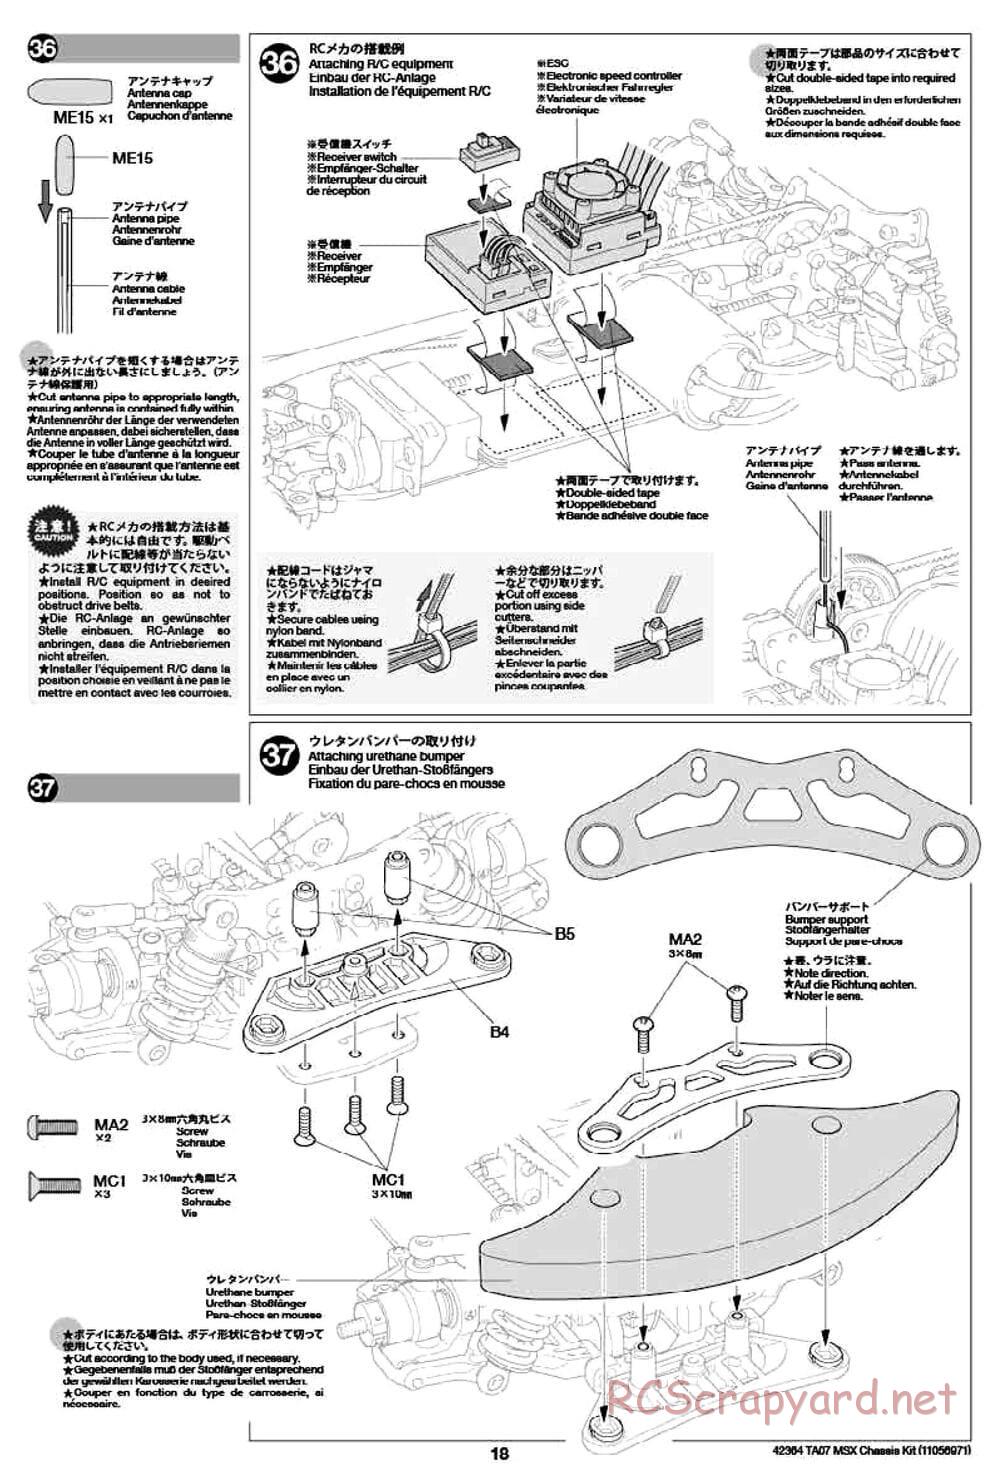 Tamiya - TA07 MSX Chassis - Manual - Page 18